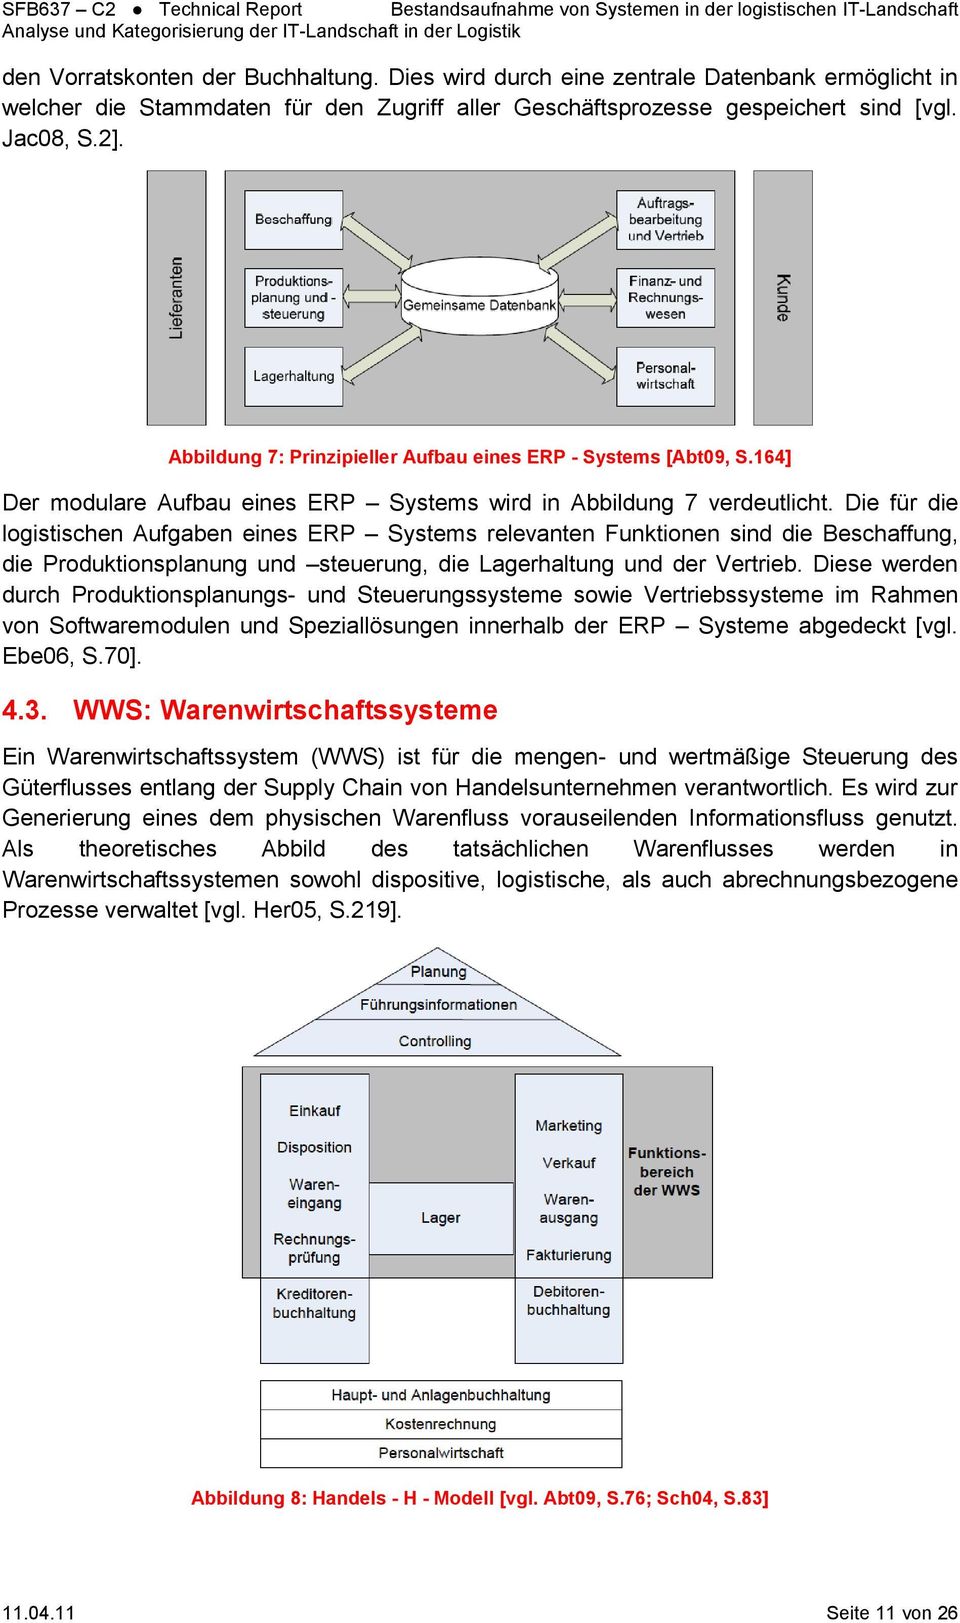 Abbildung 7: Prinzipieller Aufbau eines ERP - Systems [Abt09, S.164] Der modulare Aufbau eines ERP Systems wird in Abbildung 7 verdeutlicht.